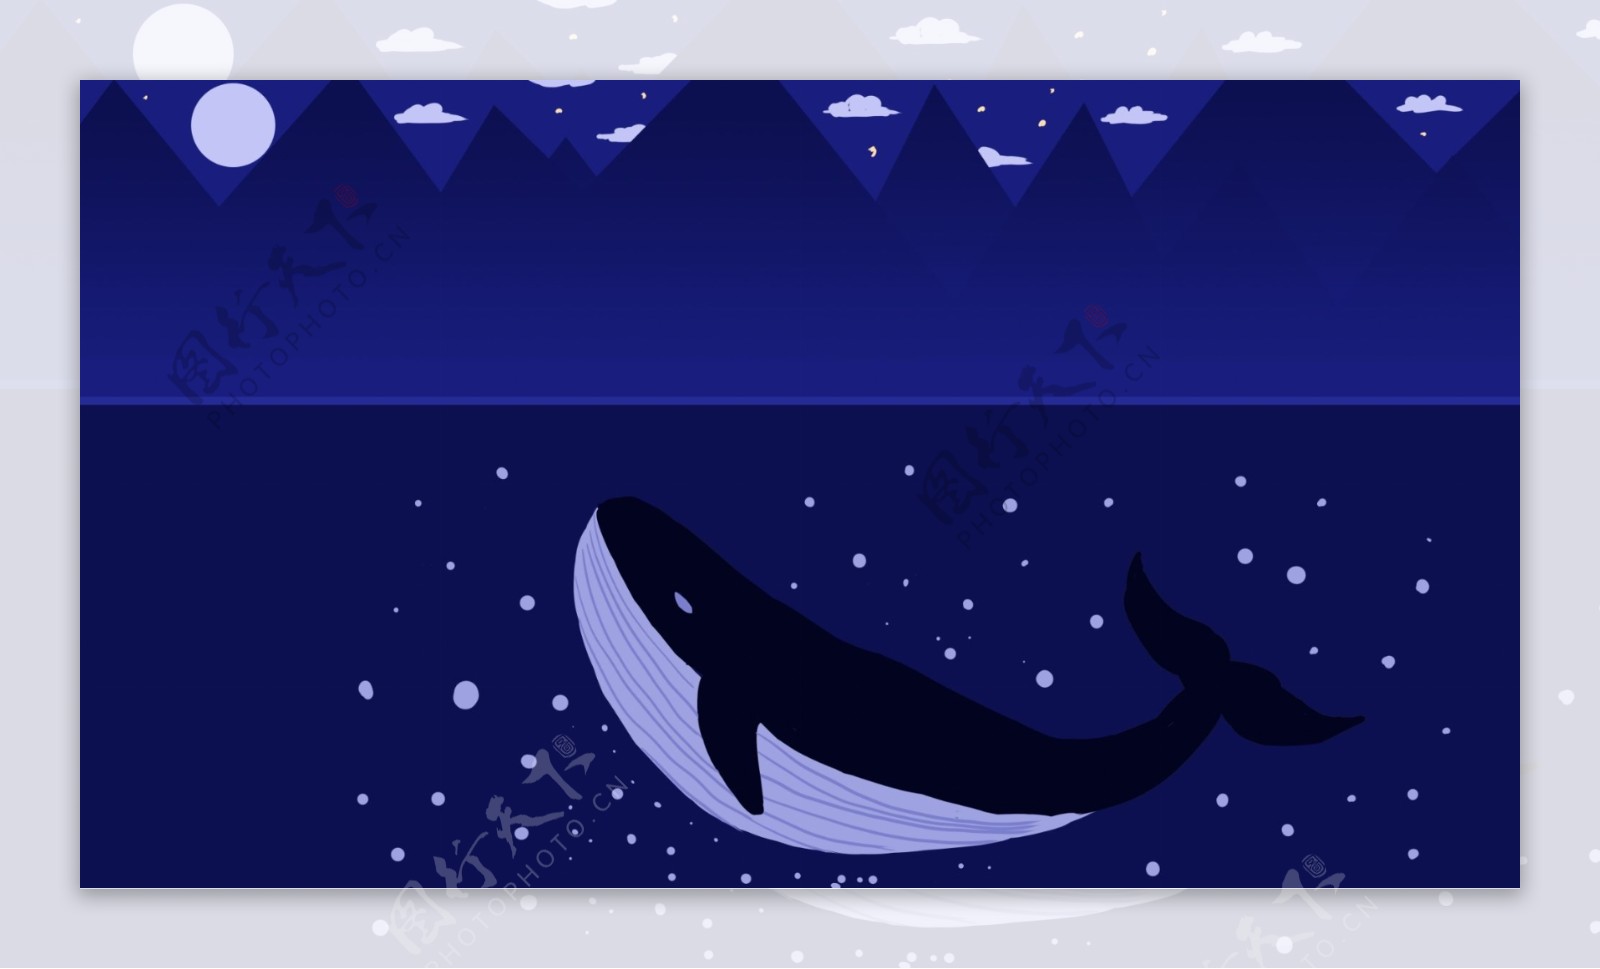 深海中游泳的鲸鱼卡通背景